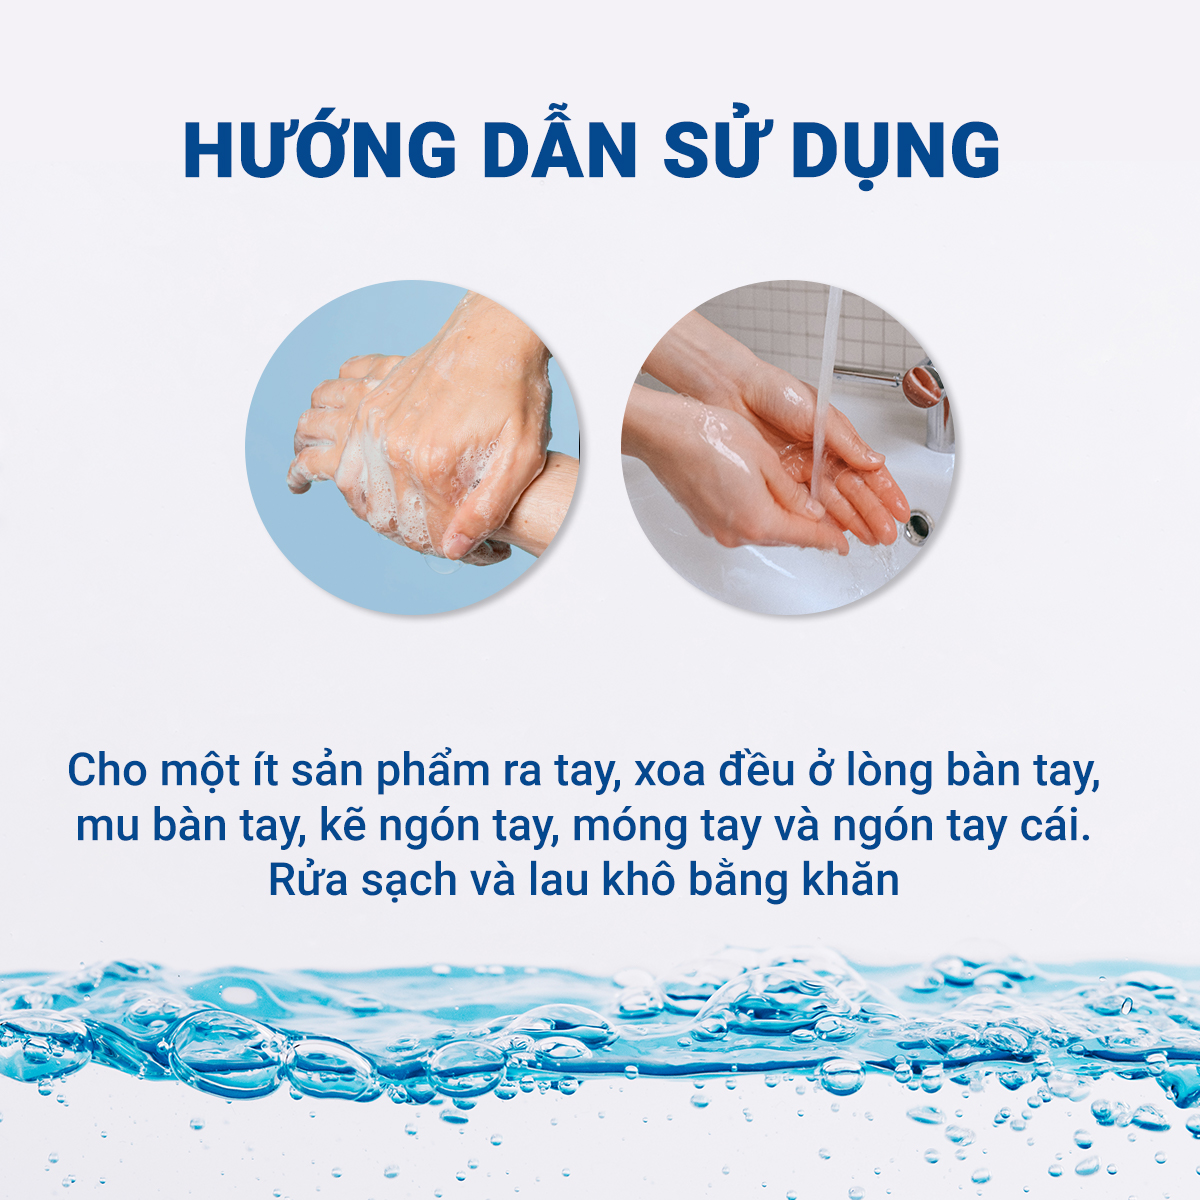 Combo 3 Nước Rửa Tay SAFEGUARD Hương Chanh 450ml